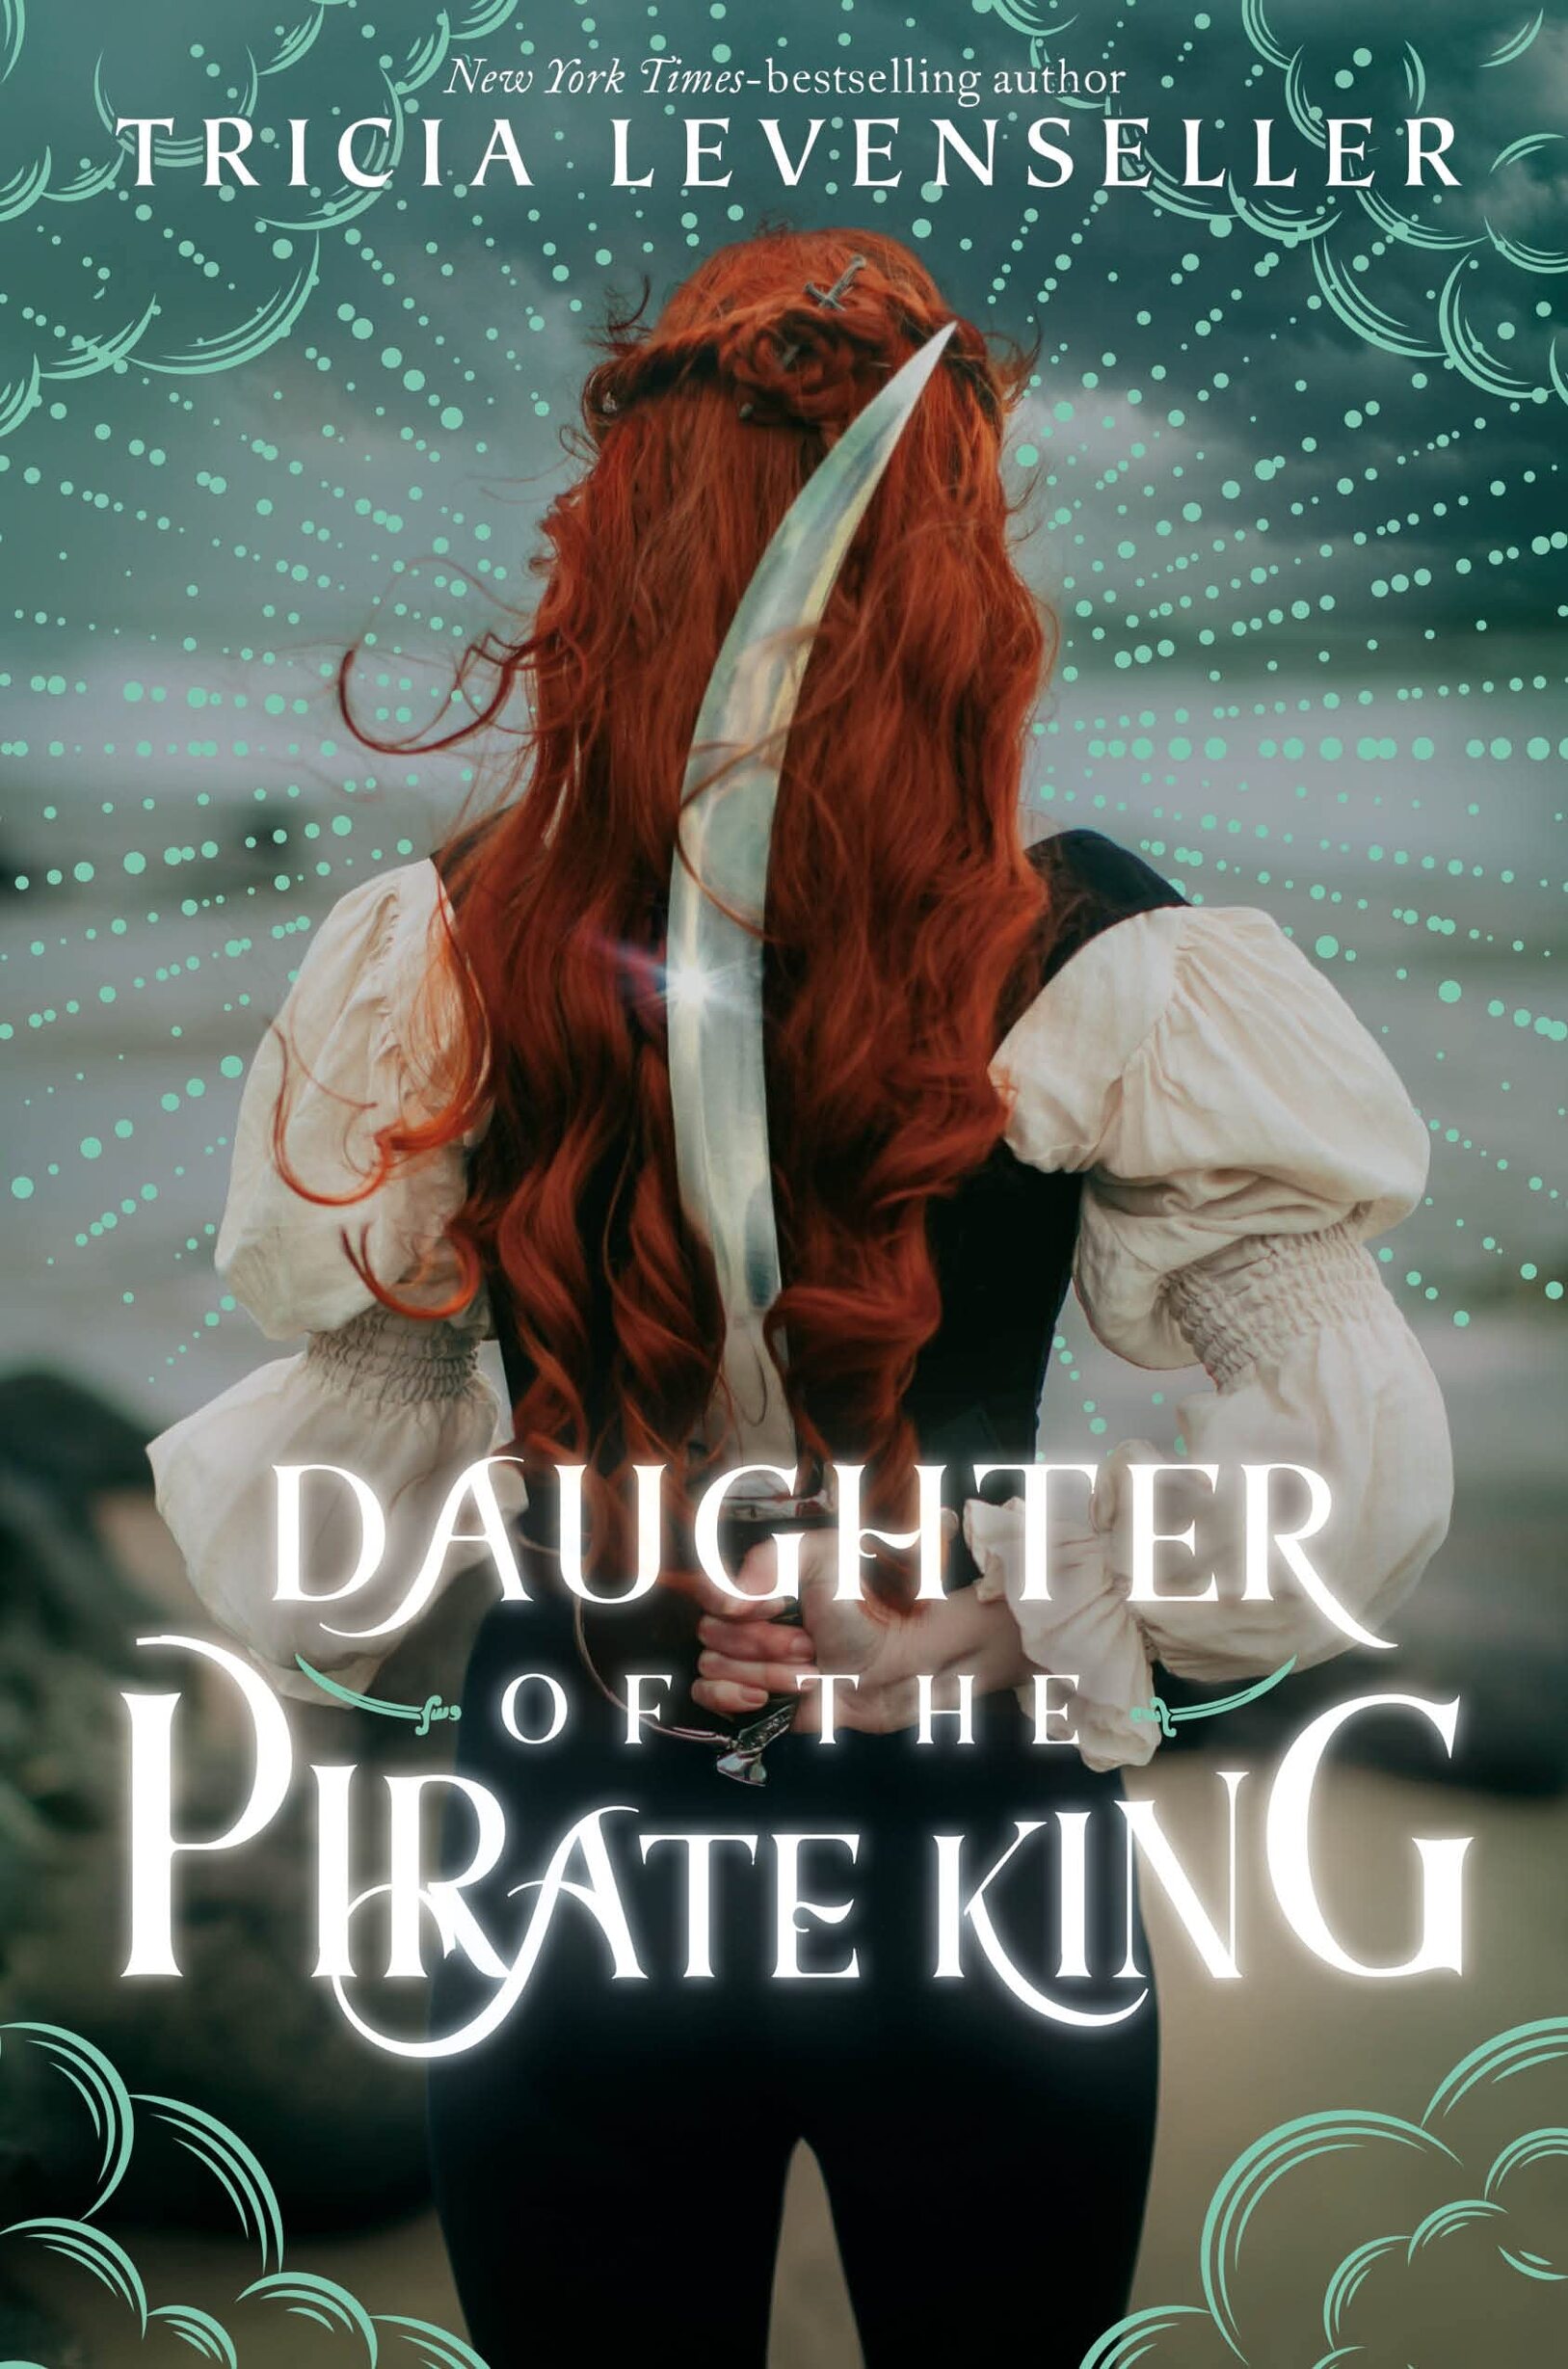 Couvertures, images et illustrations de La Fille du roi pirate, Tome 1 de  Tricia Levenseller